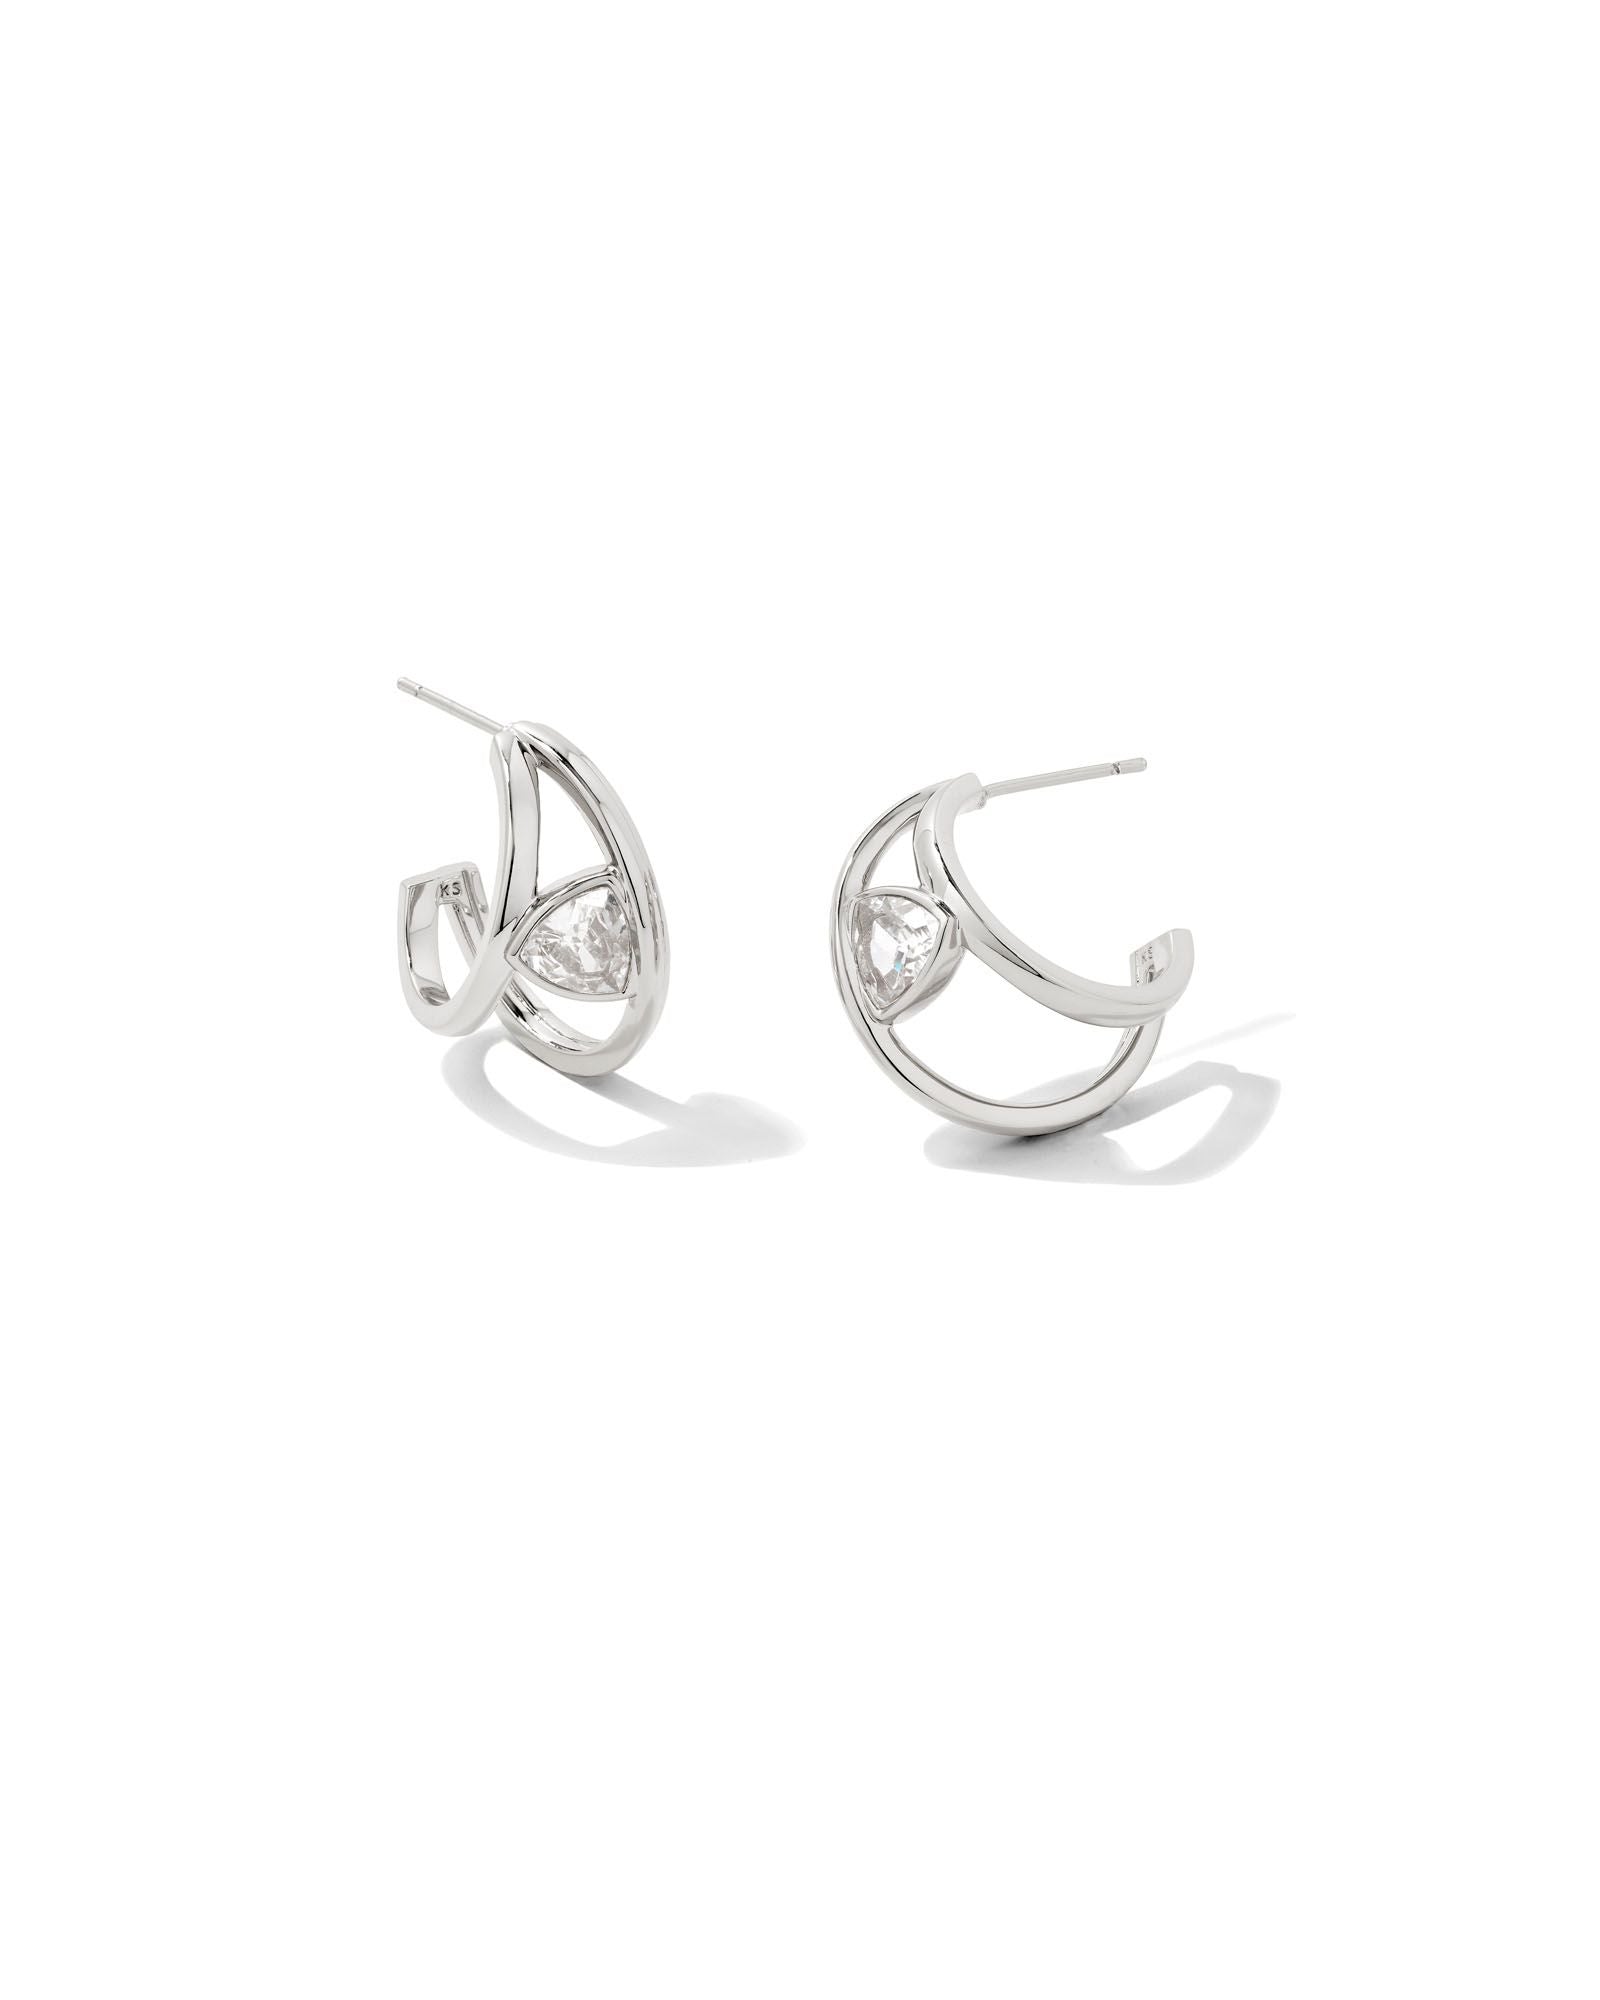 Kendra Scott Arden Huggie Earrings Rhodium White Crystal-Earrings-Kendra Scott-E1956RHD-The Twisted Chandelier